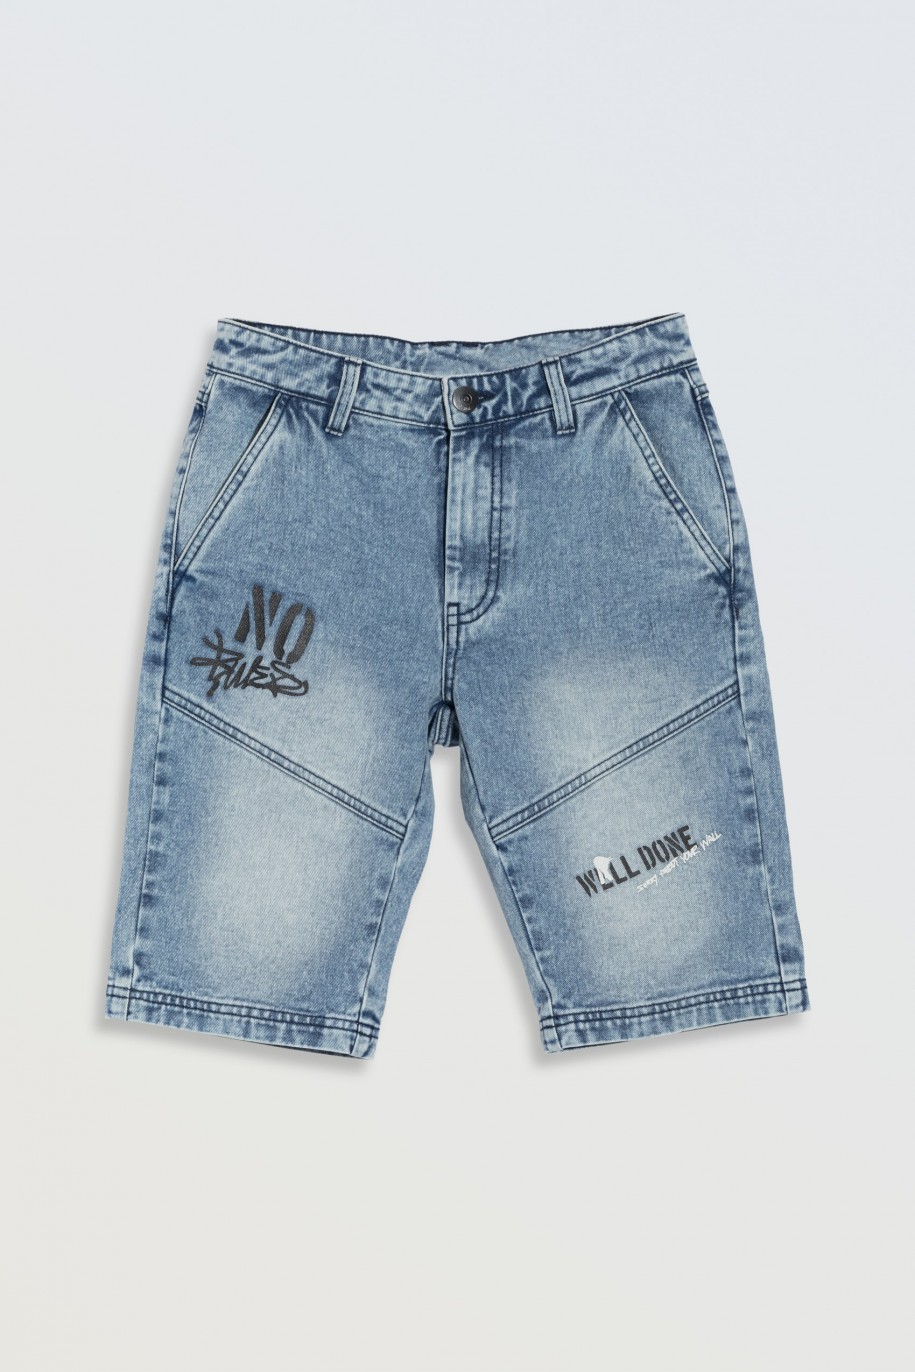 Niebieskie krótkie spodenki jeansowe z nadrukami na nogawkach - 46565